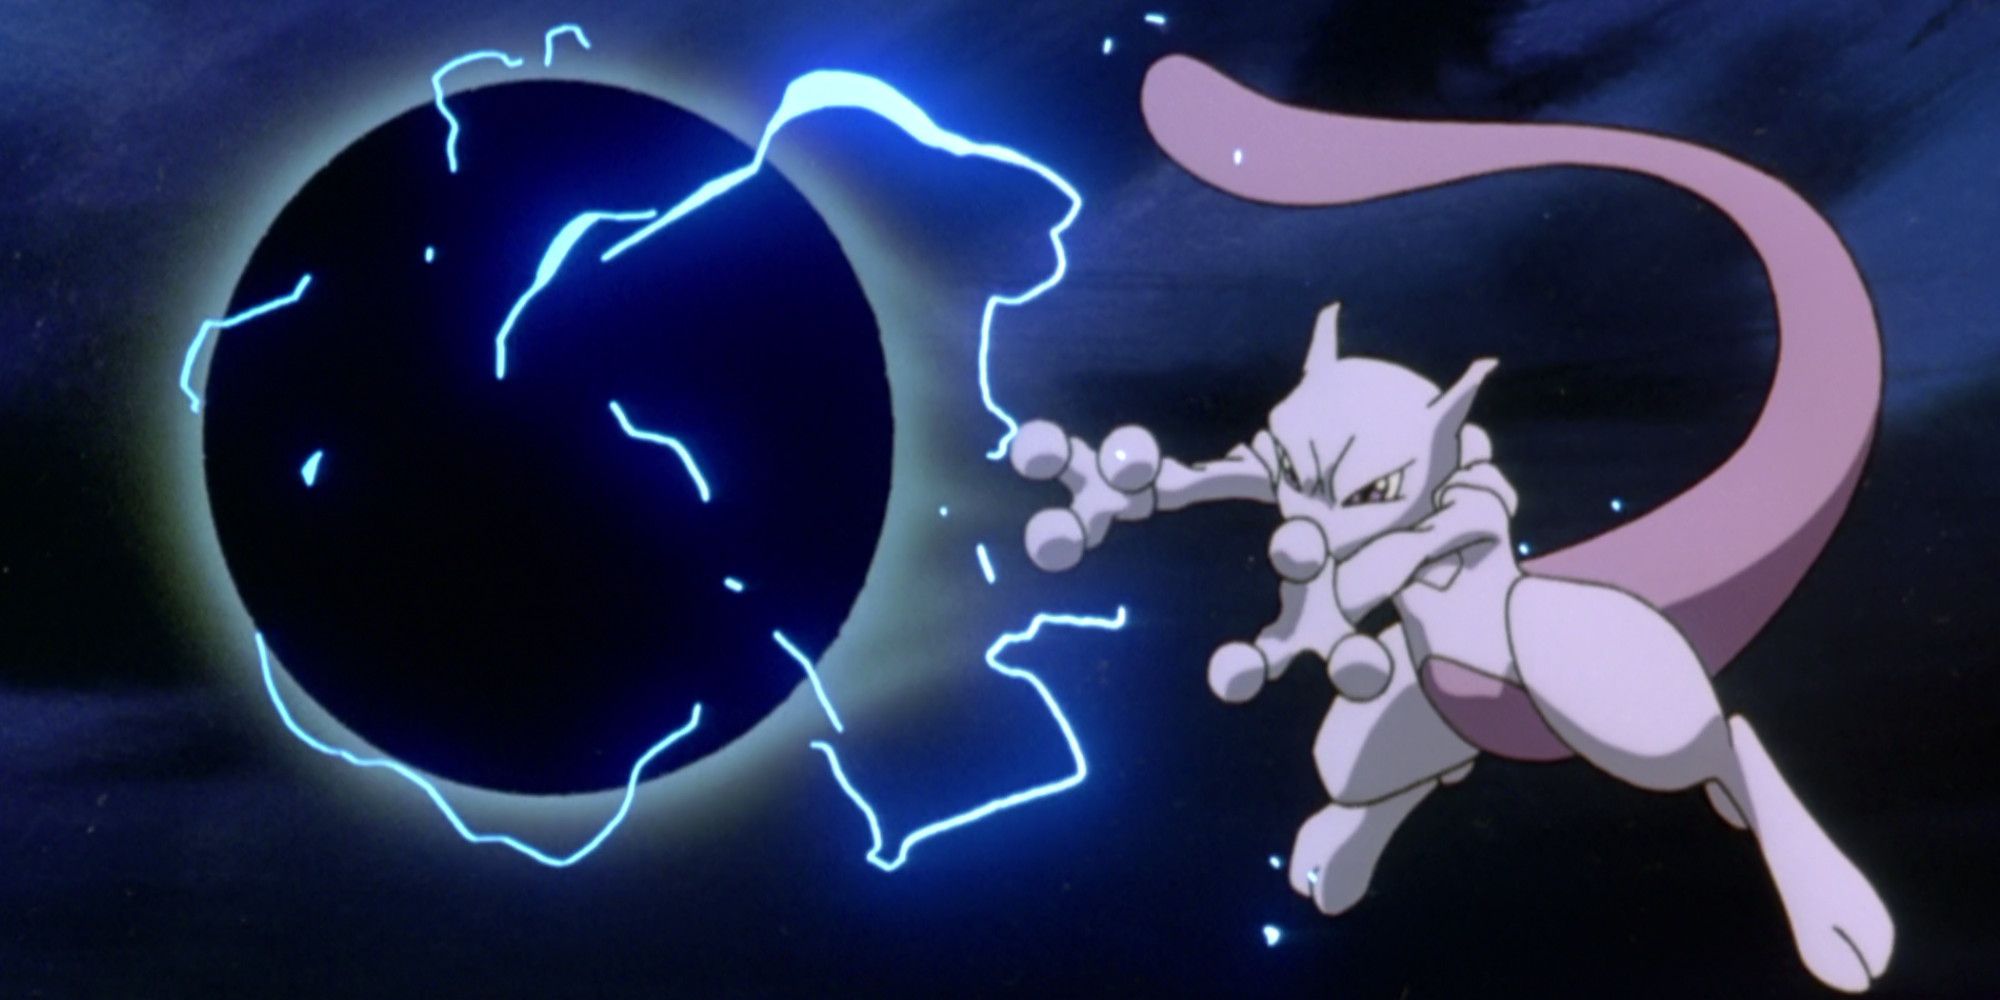 Japanese Pokémon - Mewtwo Strikes Back: Evolution Movie Pamphlet w/ Un –  Pokemon Plug